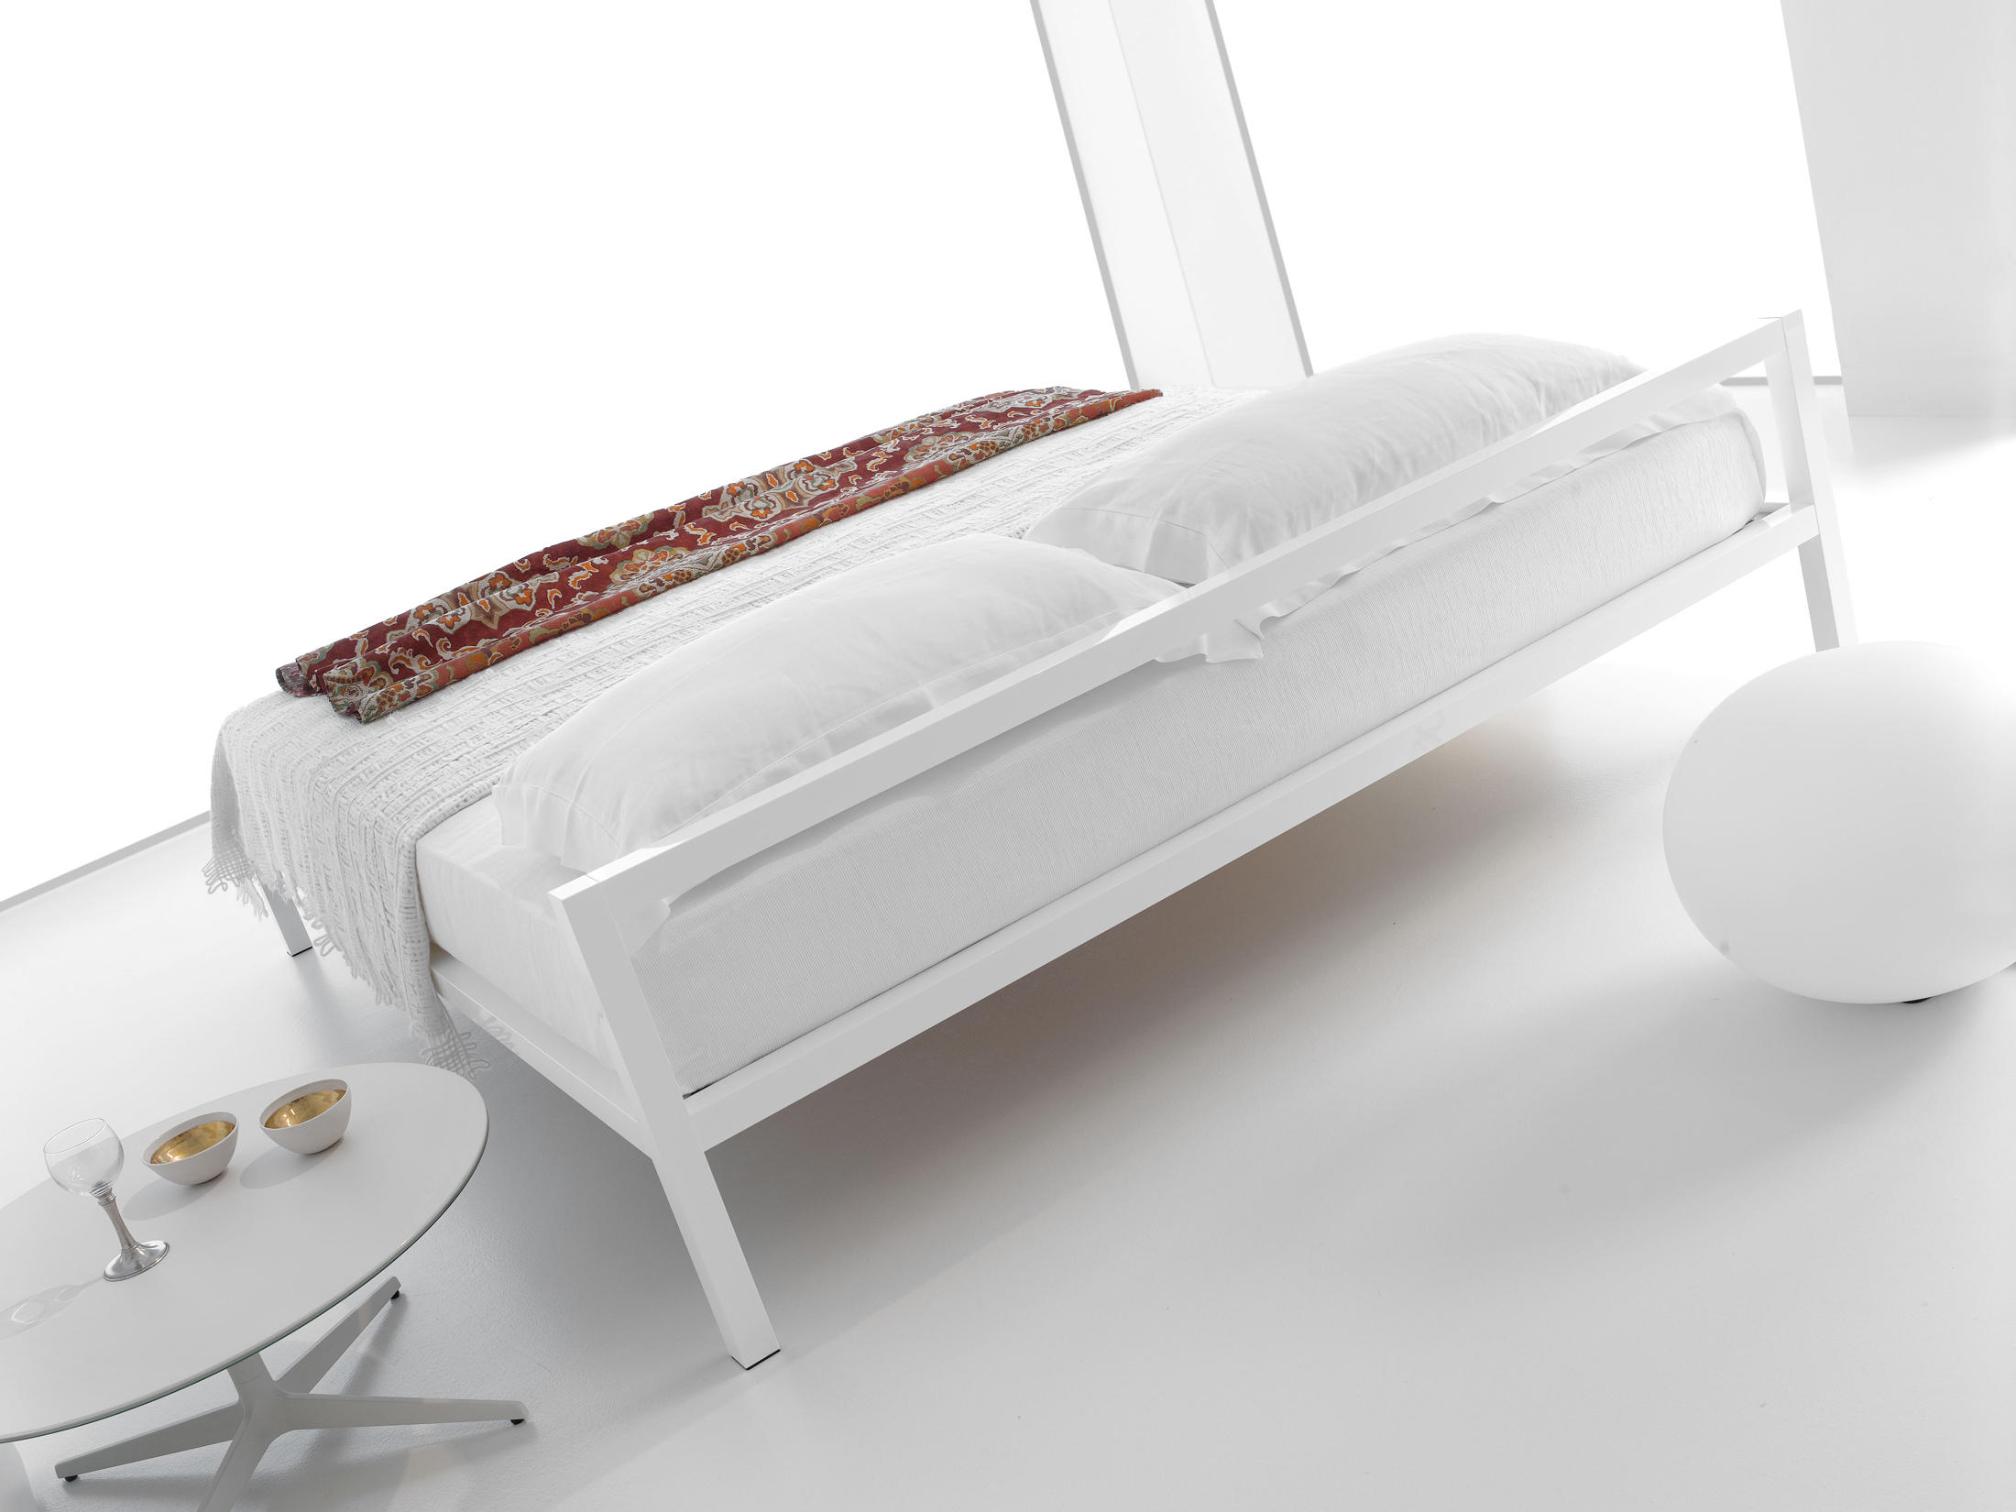 Aluminium Bed with Italian Precision ☞ Structure: Natural Anodized Aluminium X073 ☞ Dimensions: 210 x 210 cm